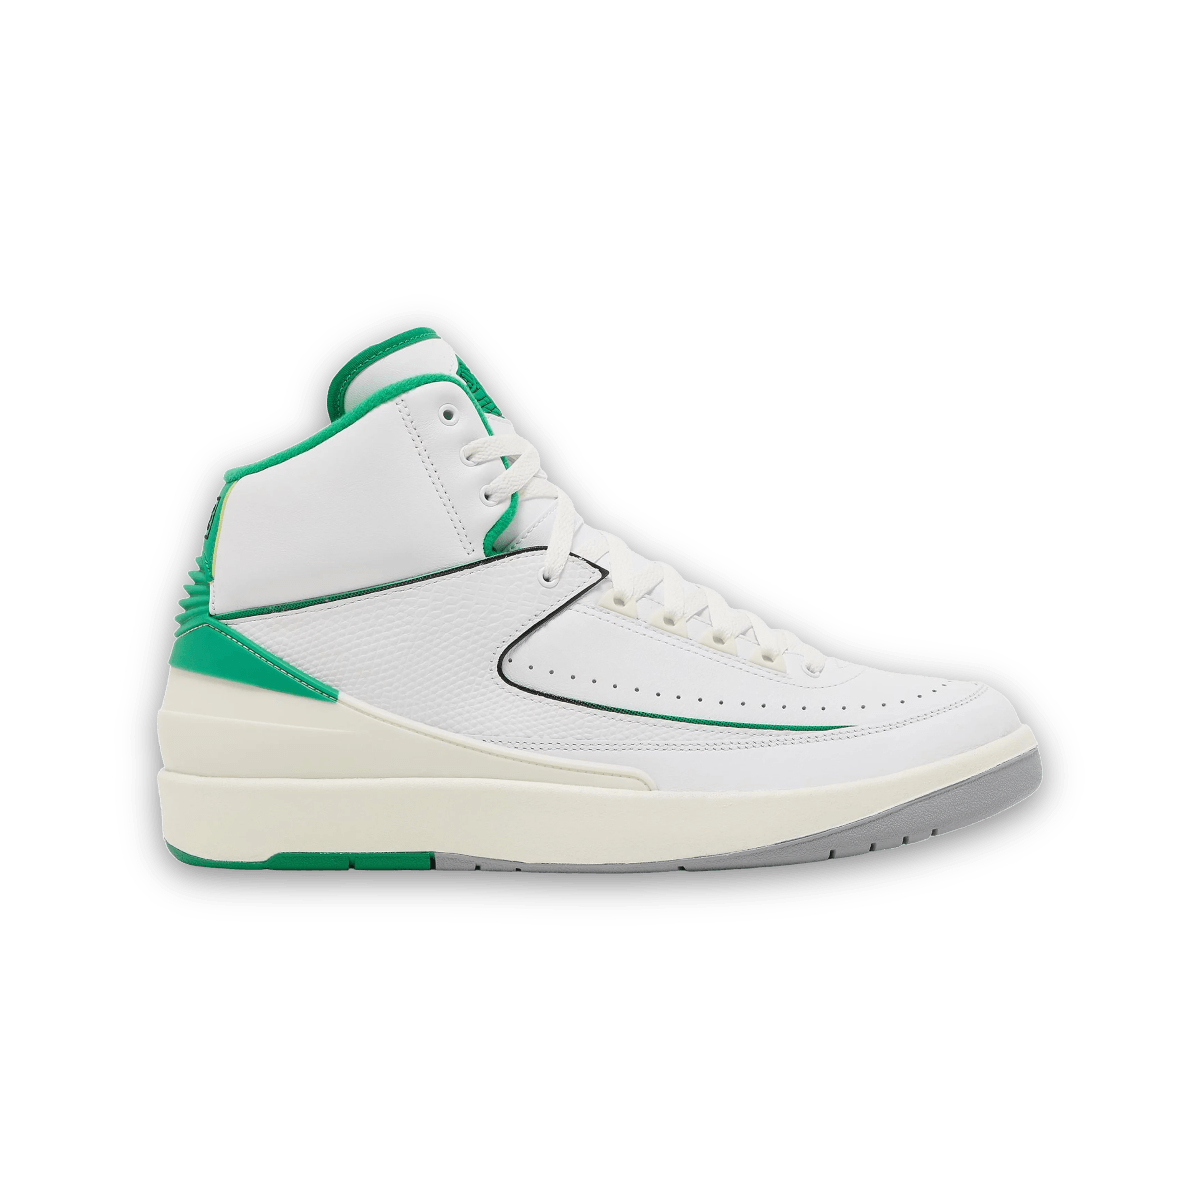 Air Jordan 2 Retro 'Lucky Green' - Mid Sneaker - Jawns on Fire Sneakers & Streetwear